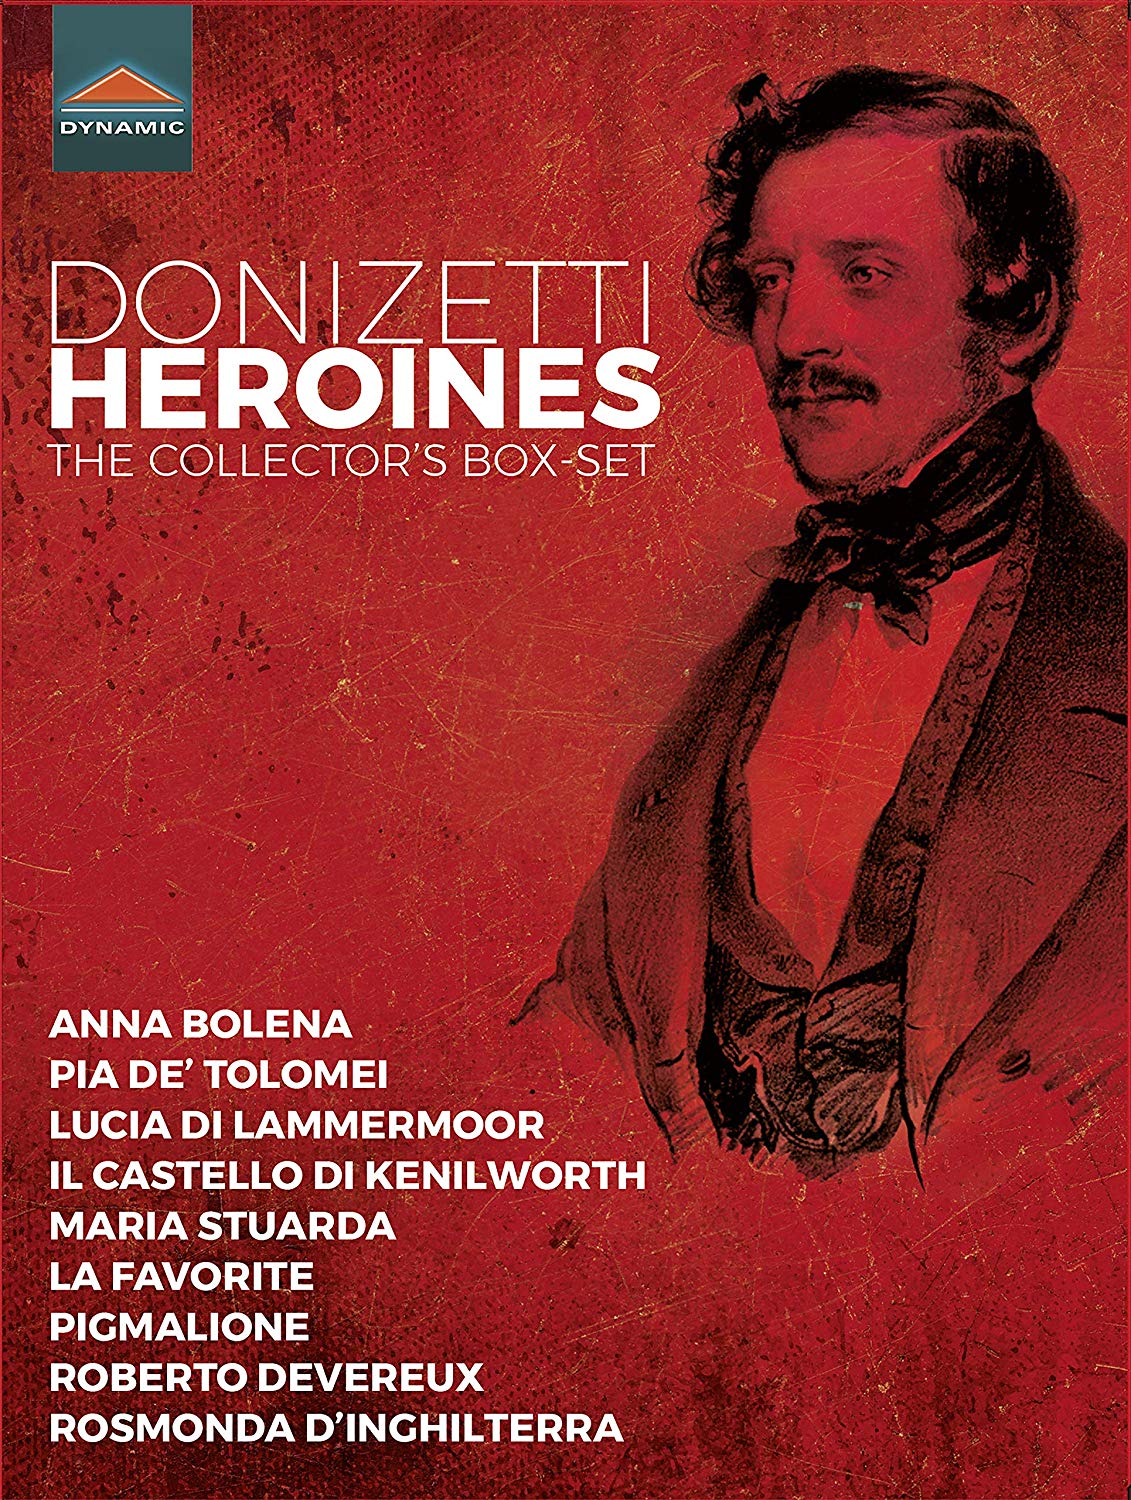 Music Dvd Gaetano Donizetti - Donizetti Heroines (13 Dvd) NUOVO SIGILLATO, EDIZIONE DEL 30/08/2019 SUBITO DISPONIBILE